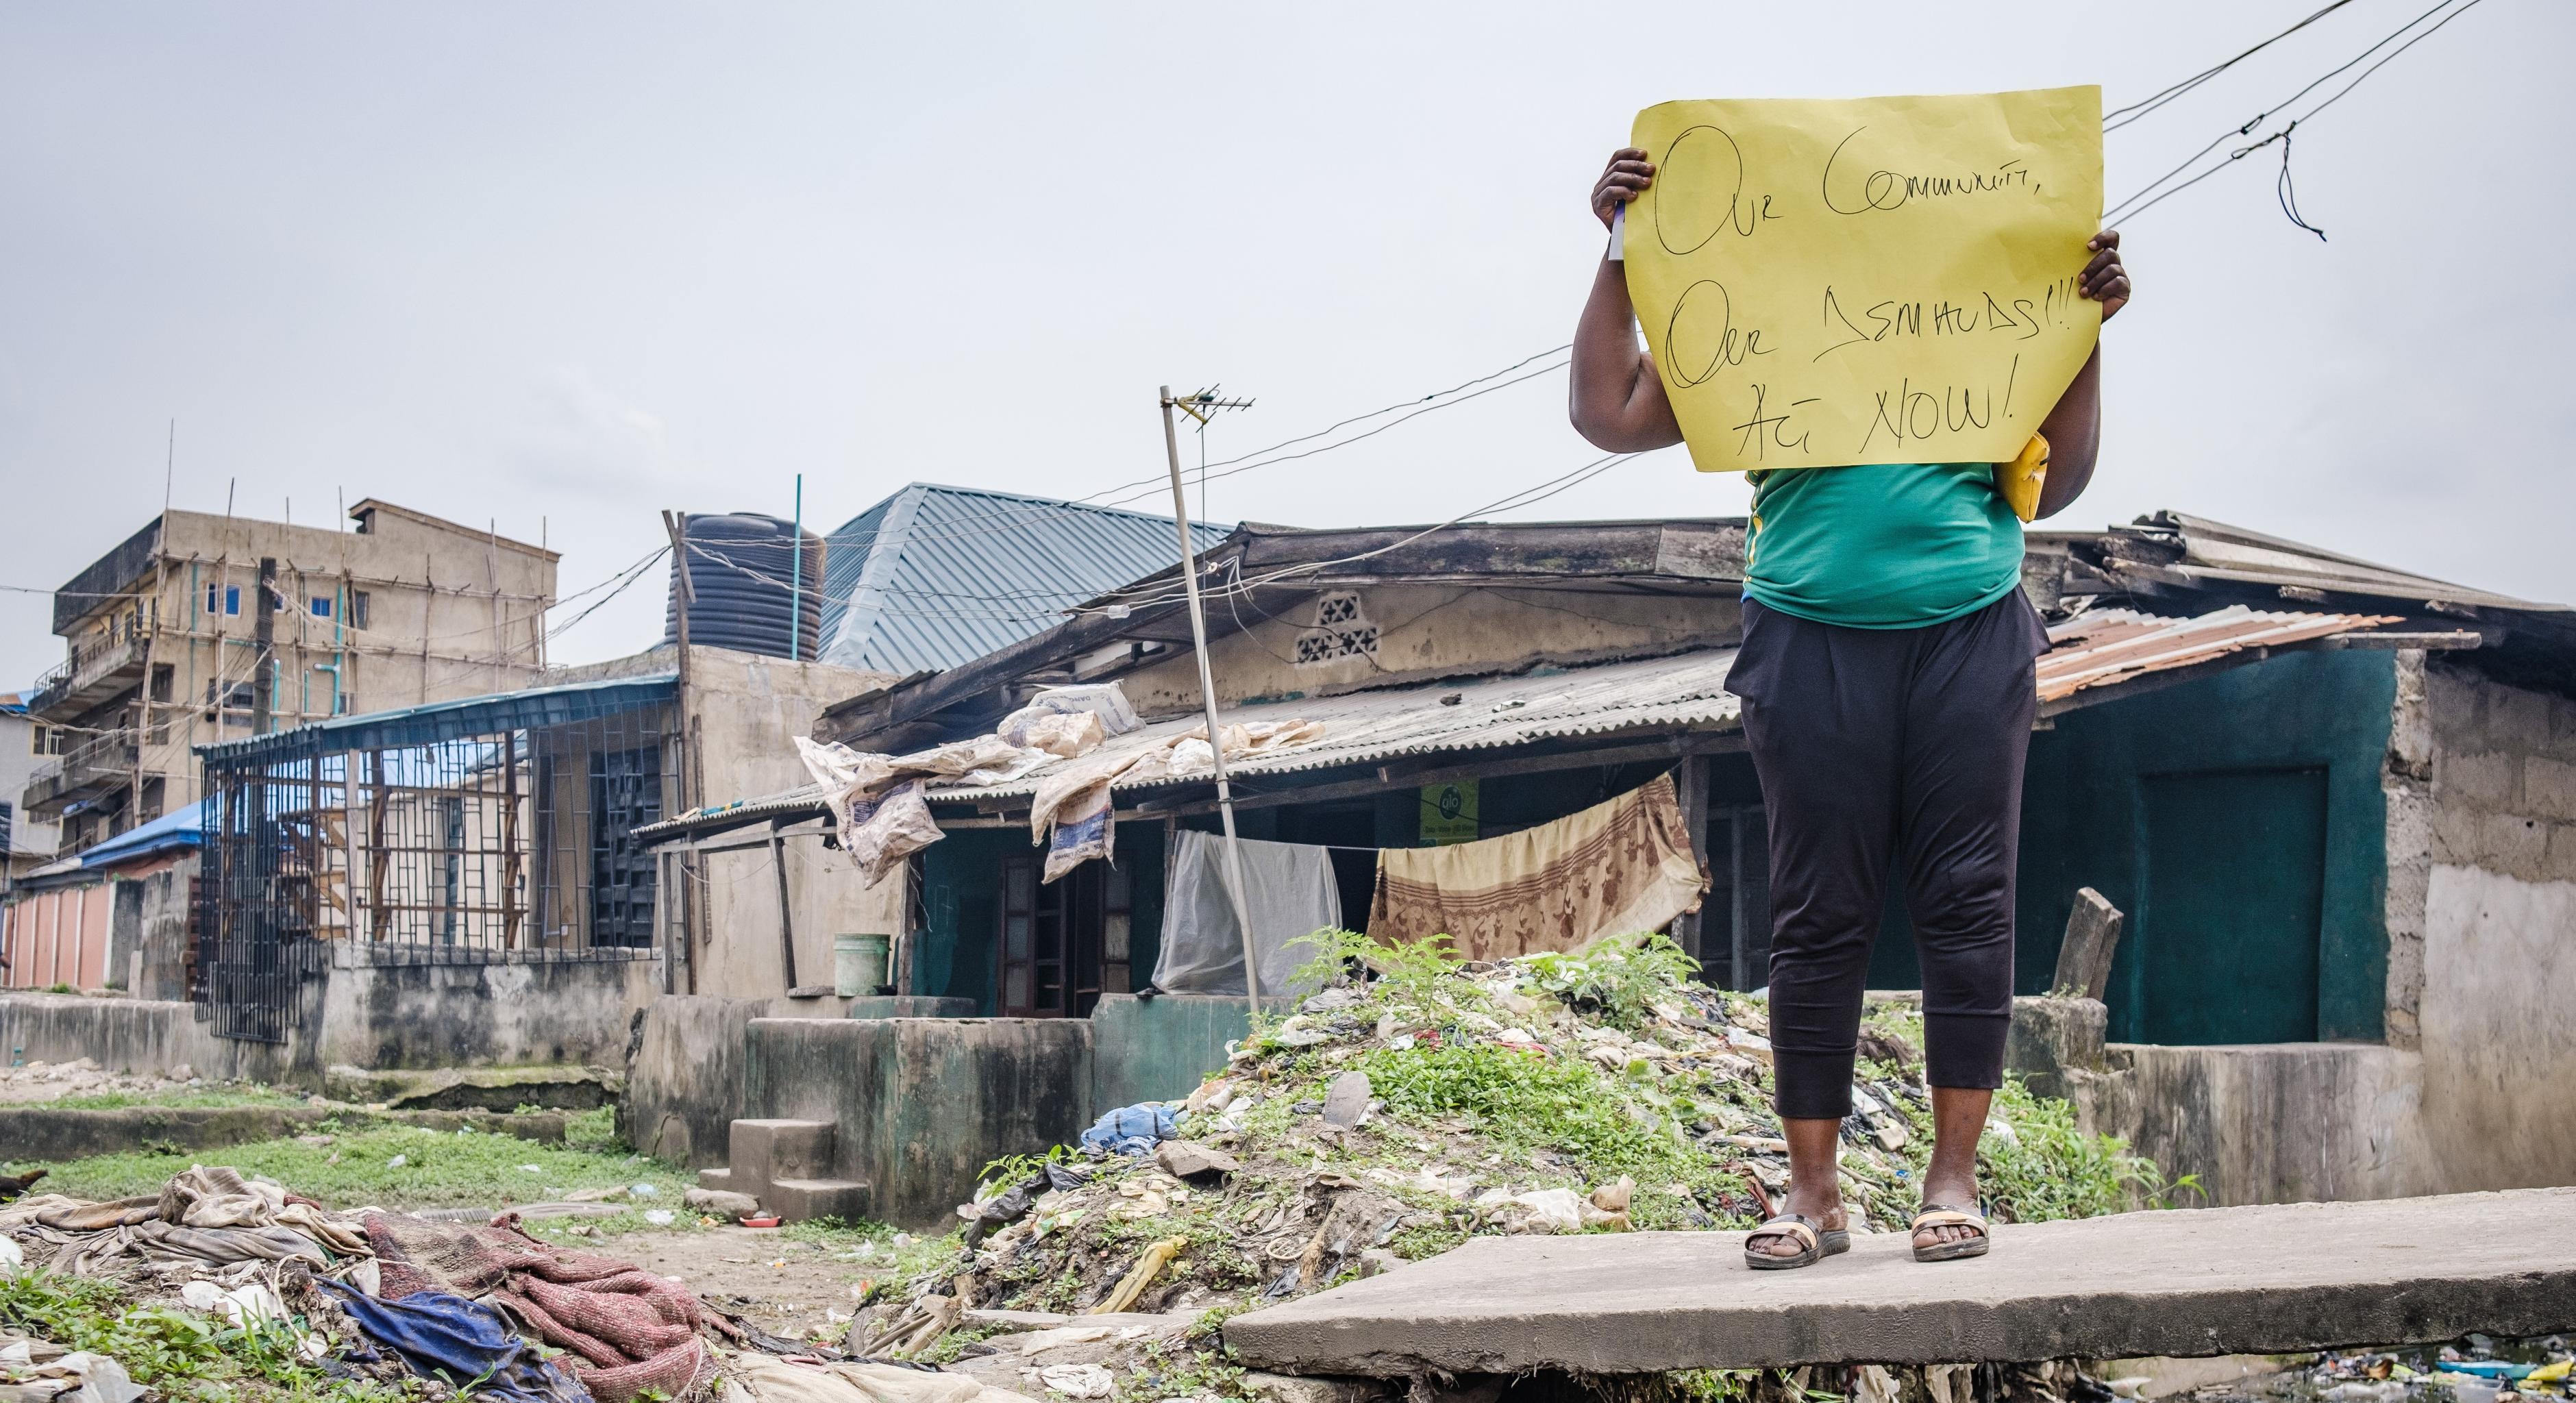 Eine Aktivistin hält ein Plakat mit der Aufschrift "Unsere Community, unsere Forderungen! Jetzt handeln!" hoch. Sie trägt ein grünes T-Shirt und eine dunkle Hose. Im Hintergrund sind Häuser zu sehen.